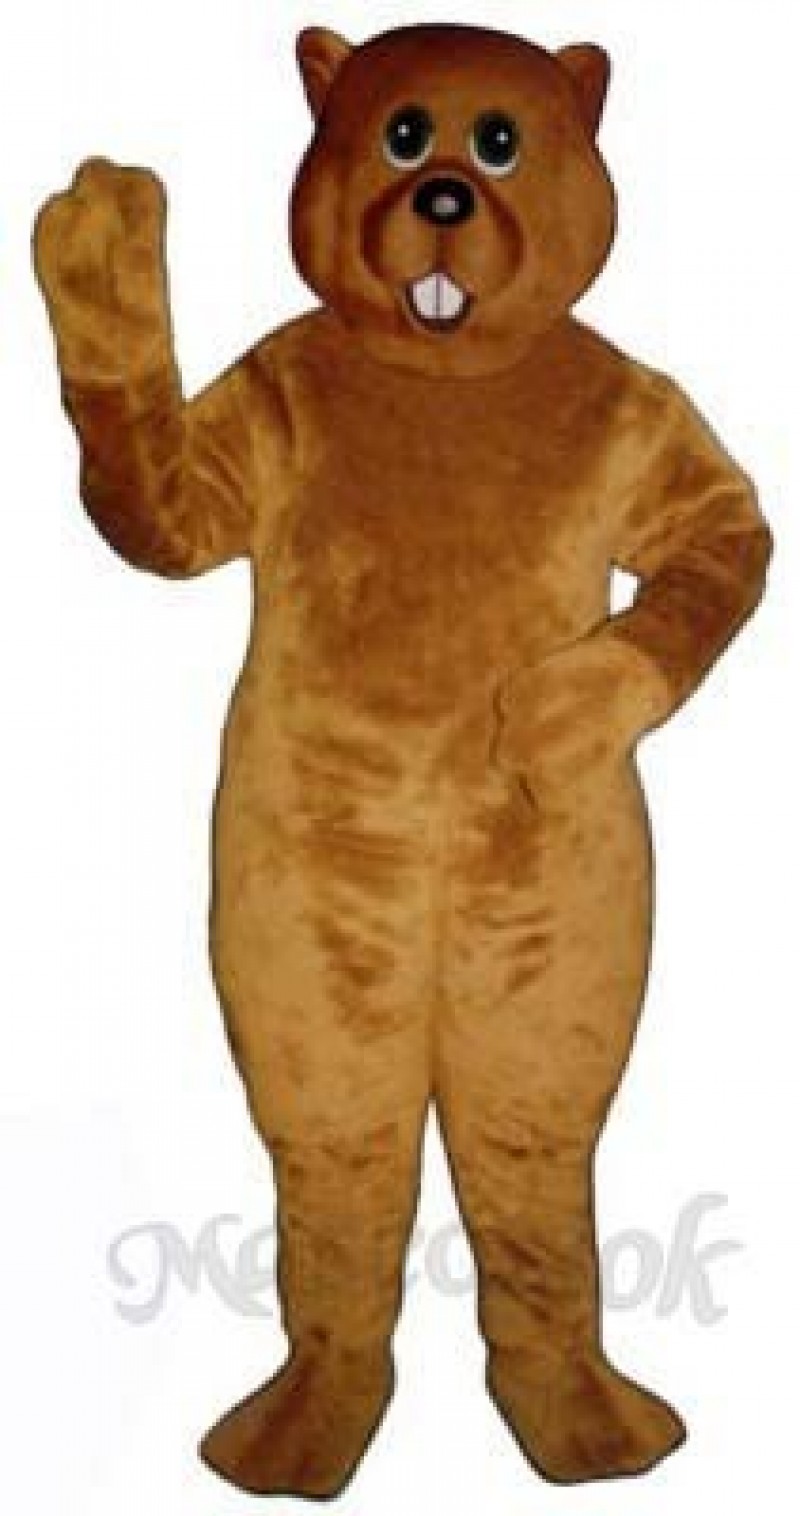 Marsha Marmot Groundhog Mascot Costume